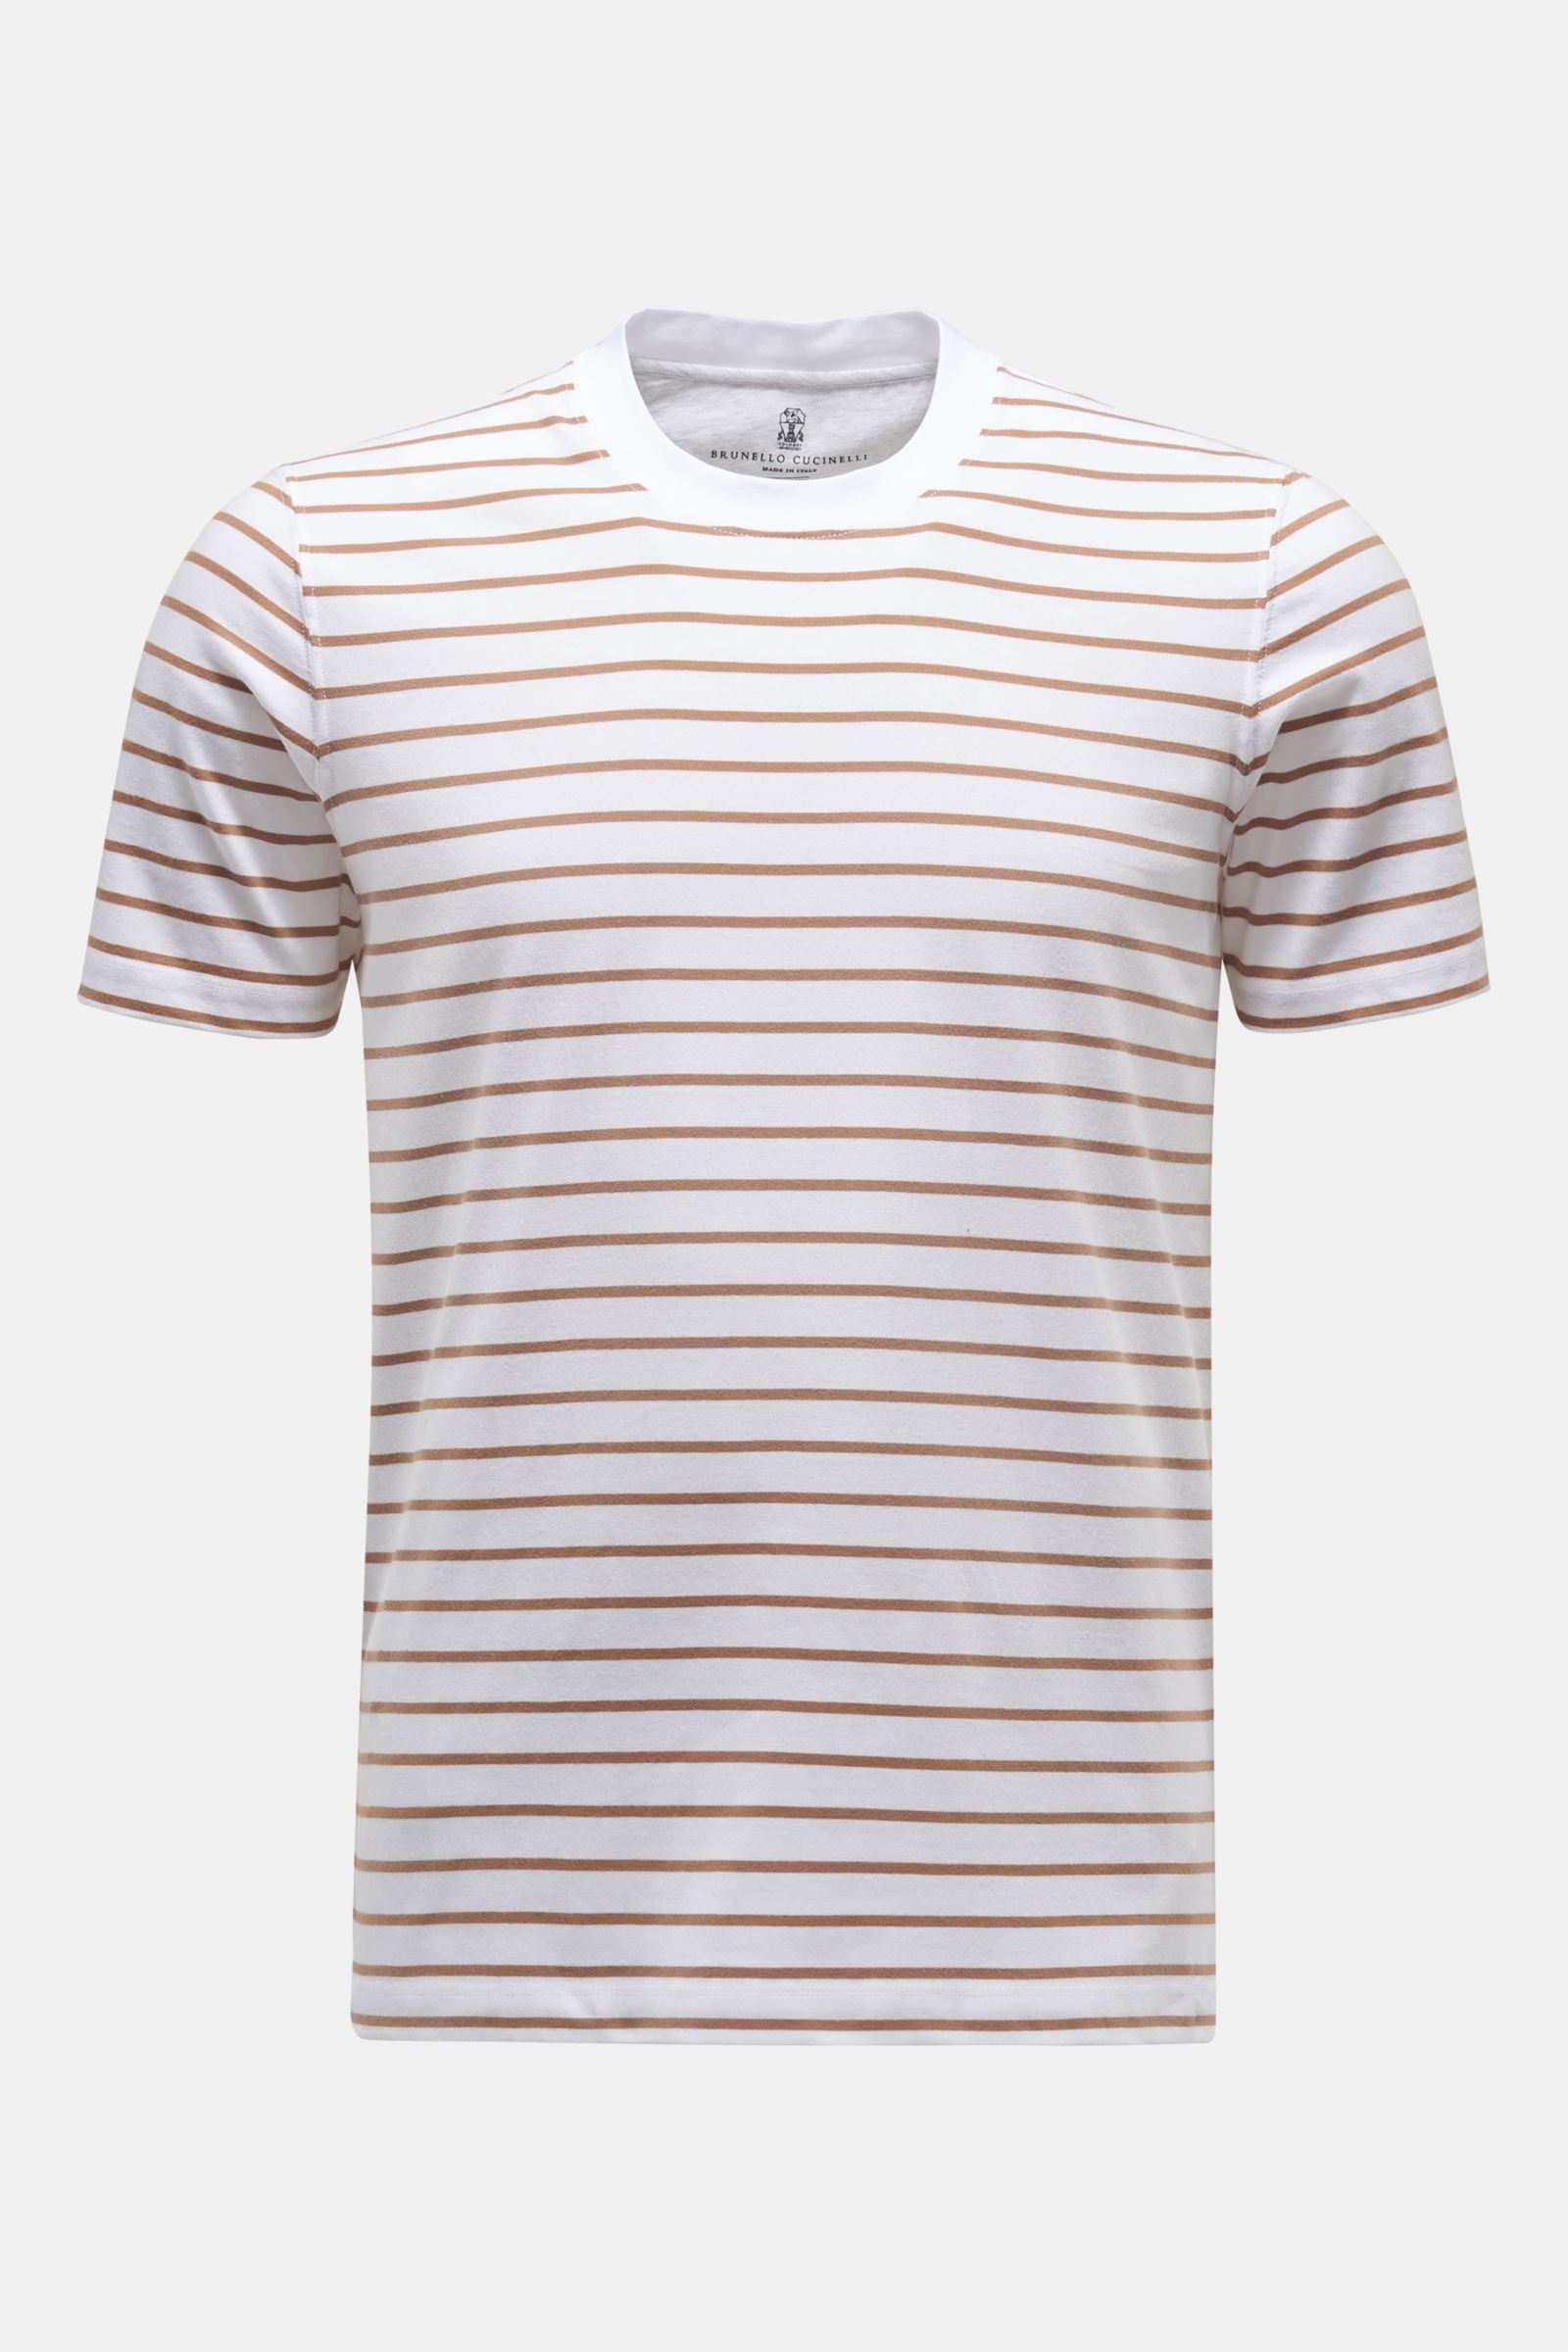 Rundhals-T-Shirt braun/weiß gestreift